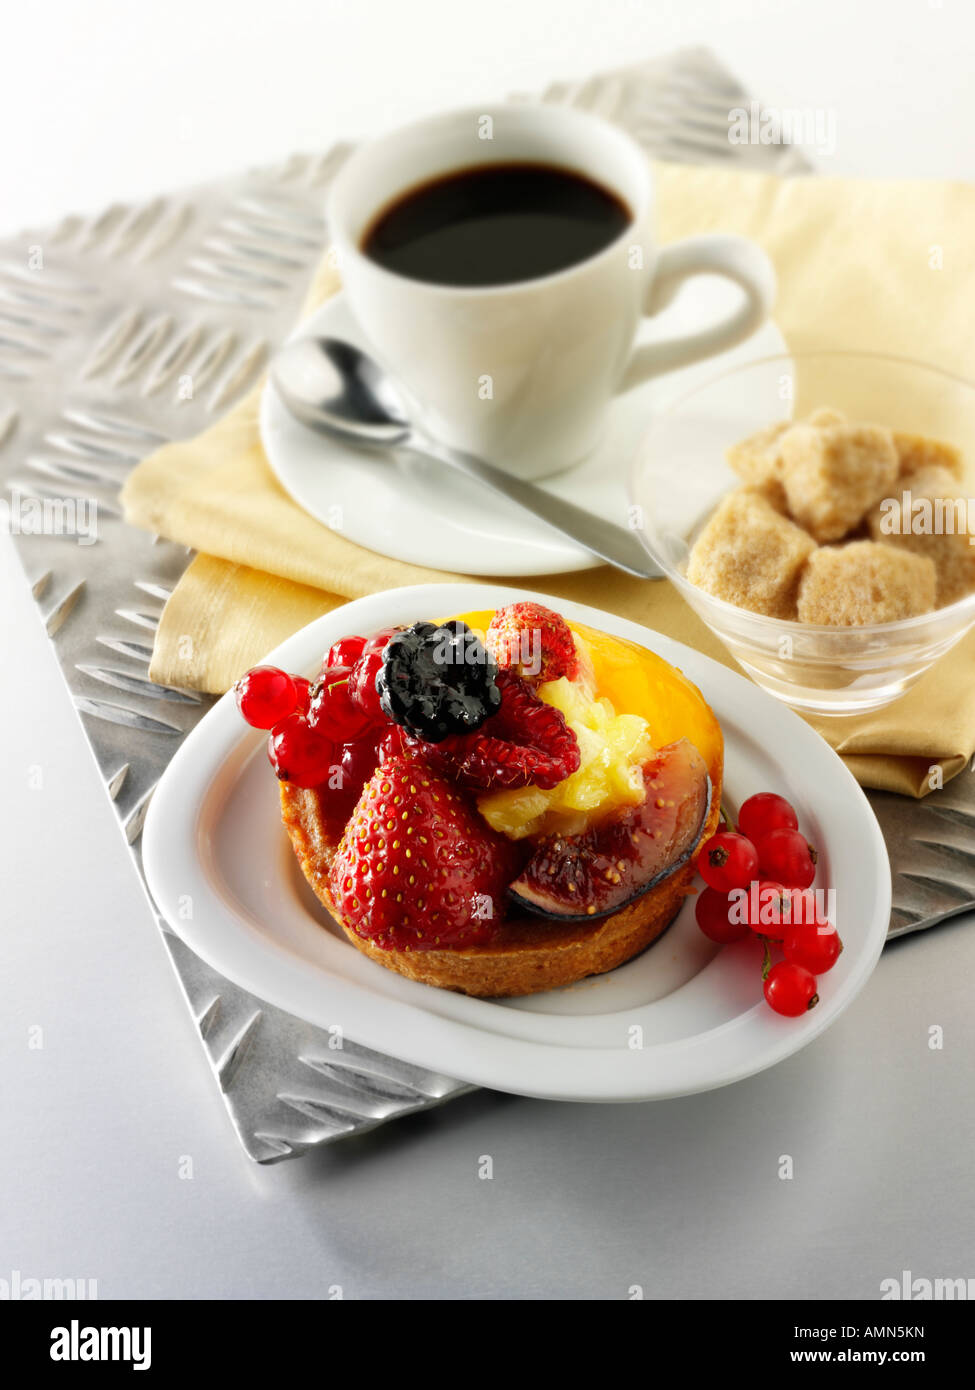 Espresso, mit roten Johannisbeeren und Wilde Erdbeere Custard tart Gebäck in einem Café mit Kaffee Tasse Stockfoto